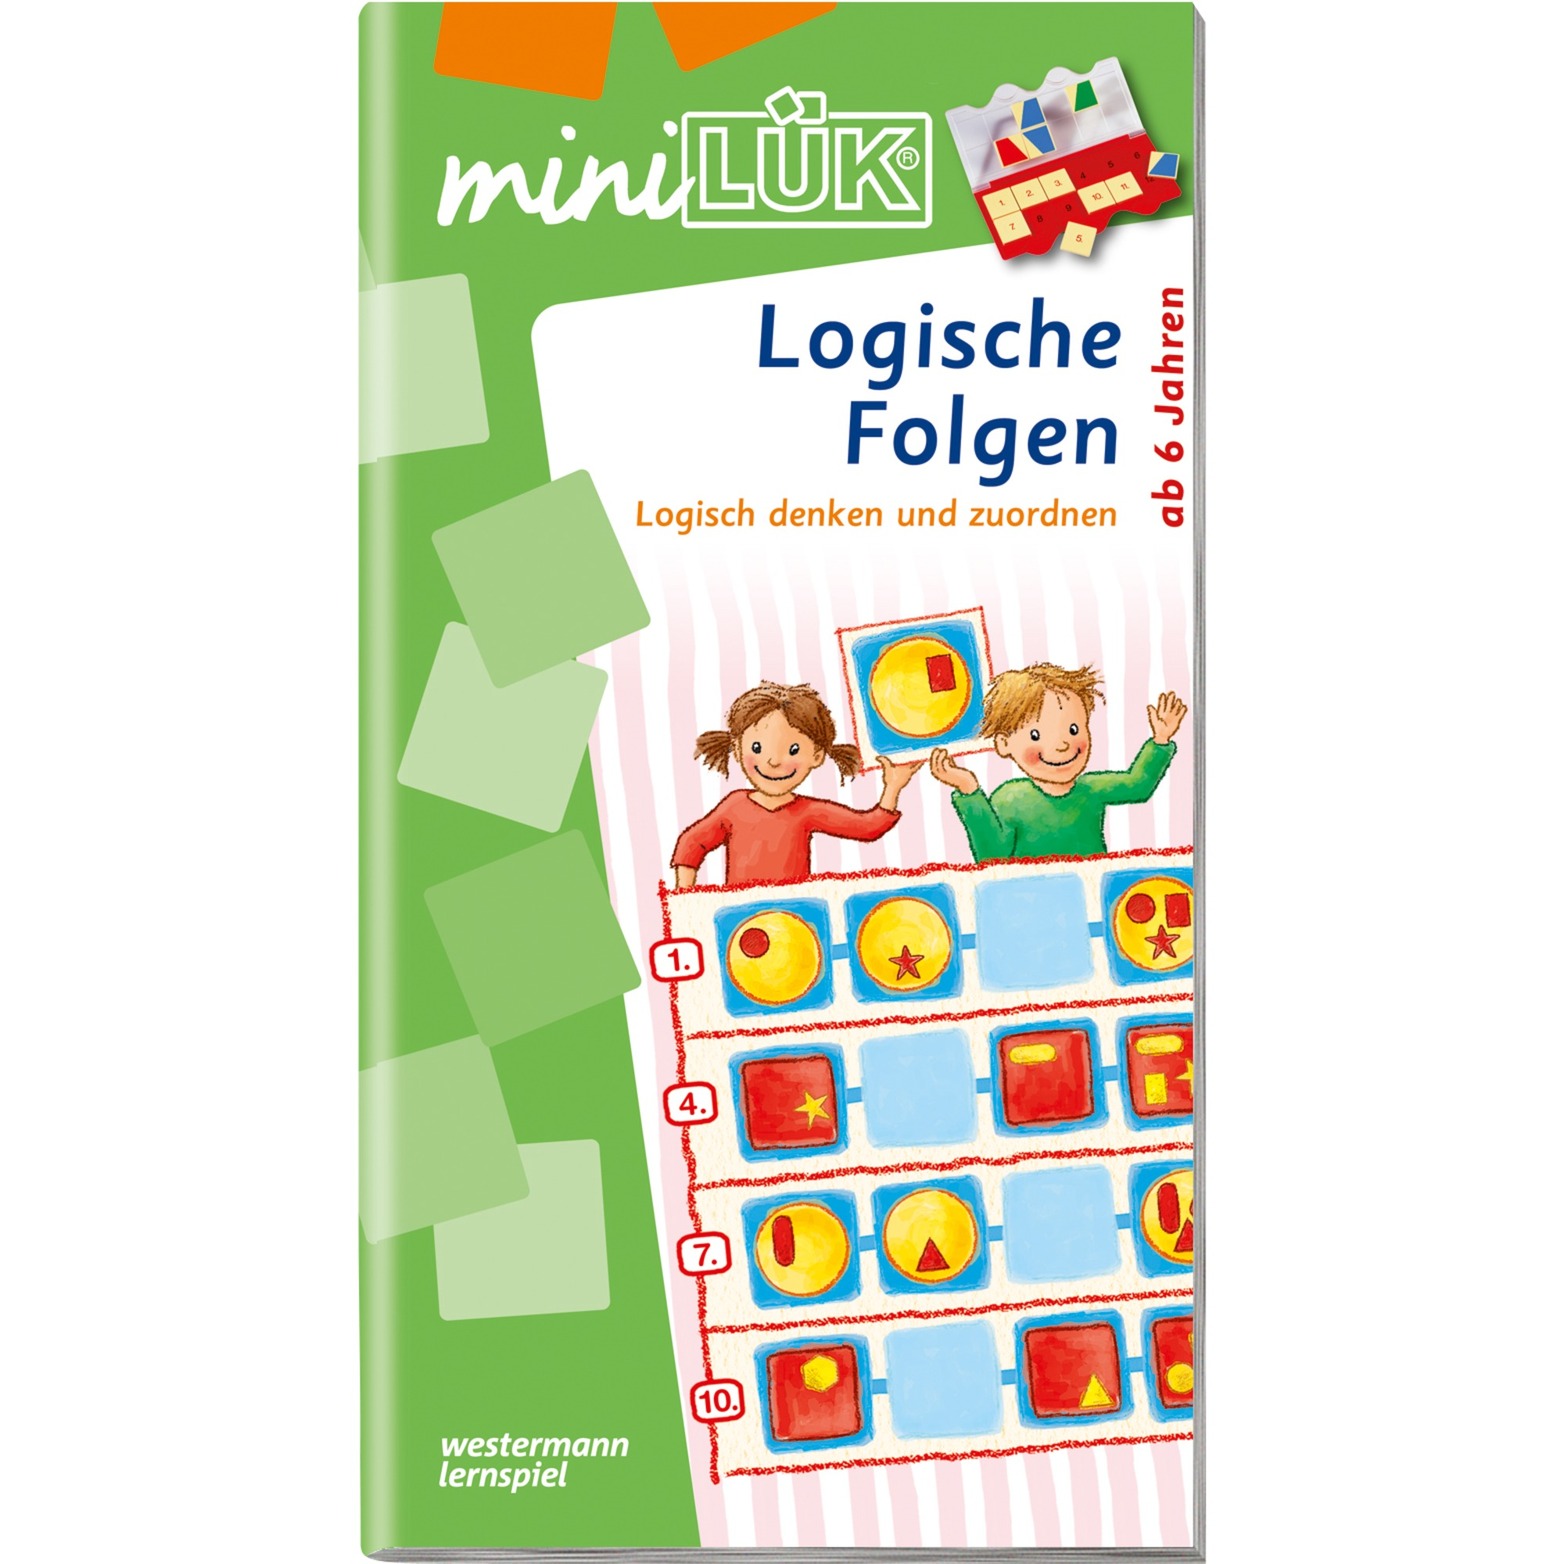 miniLÜK Logische Folgen książka dla dzieci, Książki edukacyjne